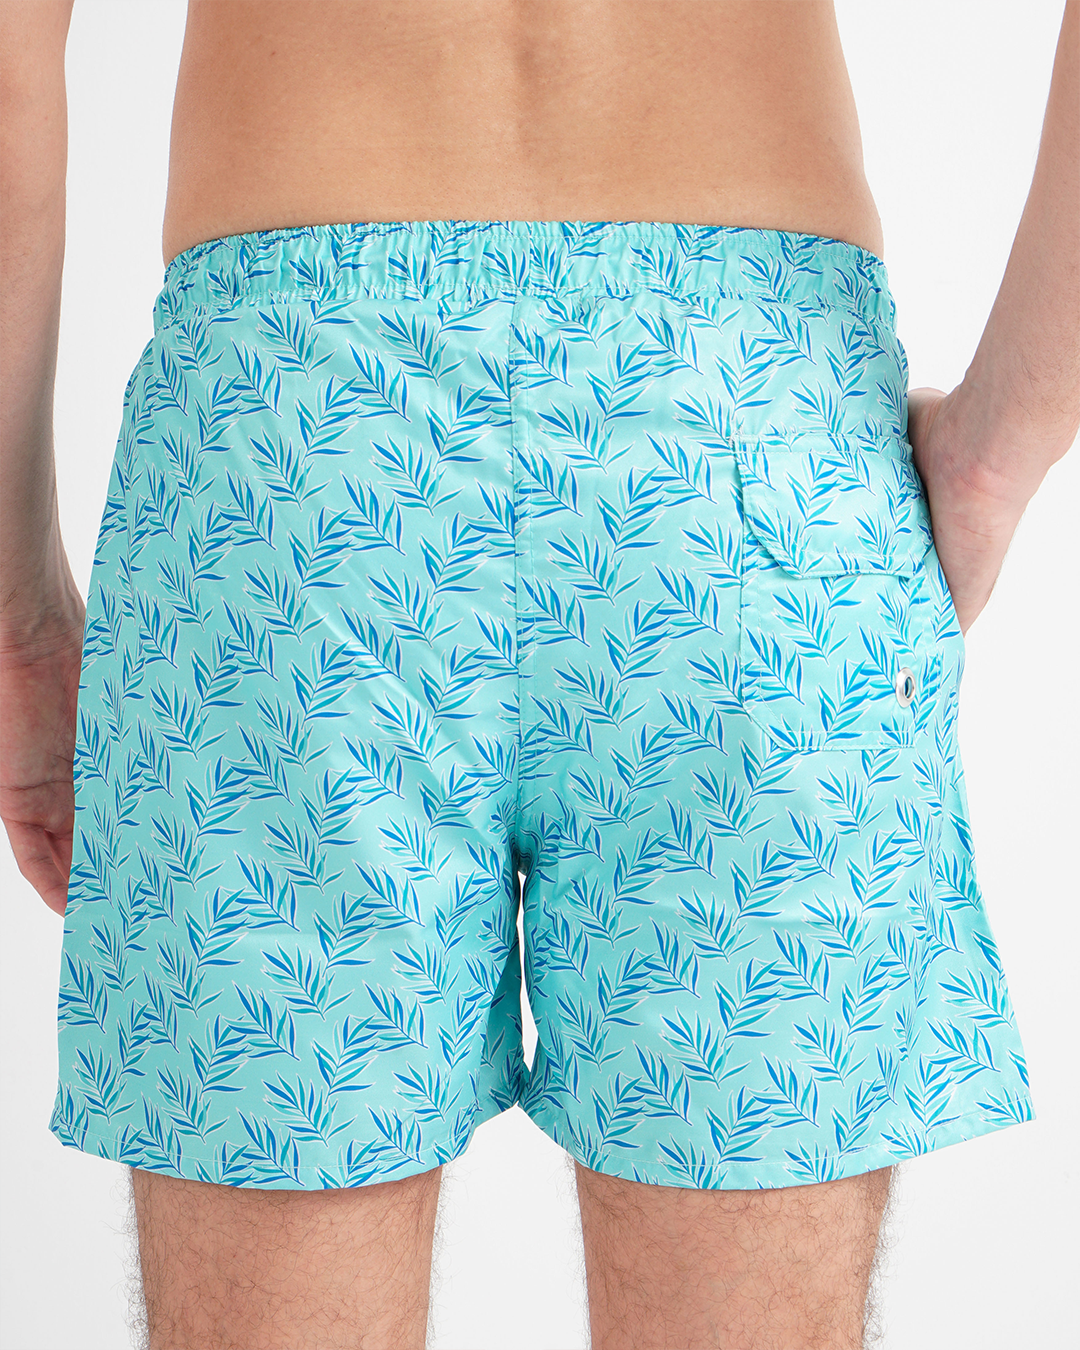 Men's swimsuit shorts leaf print